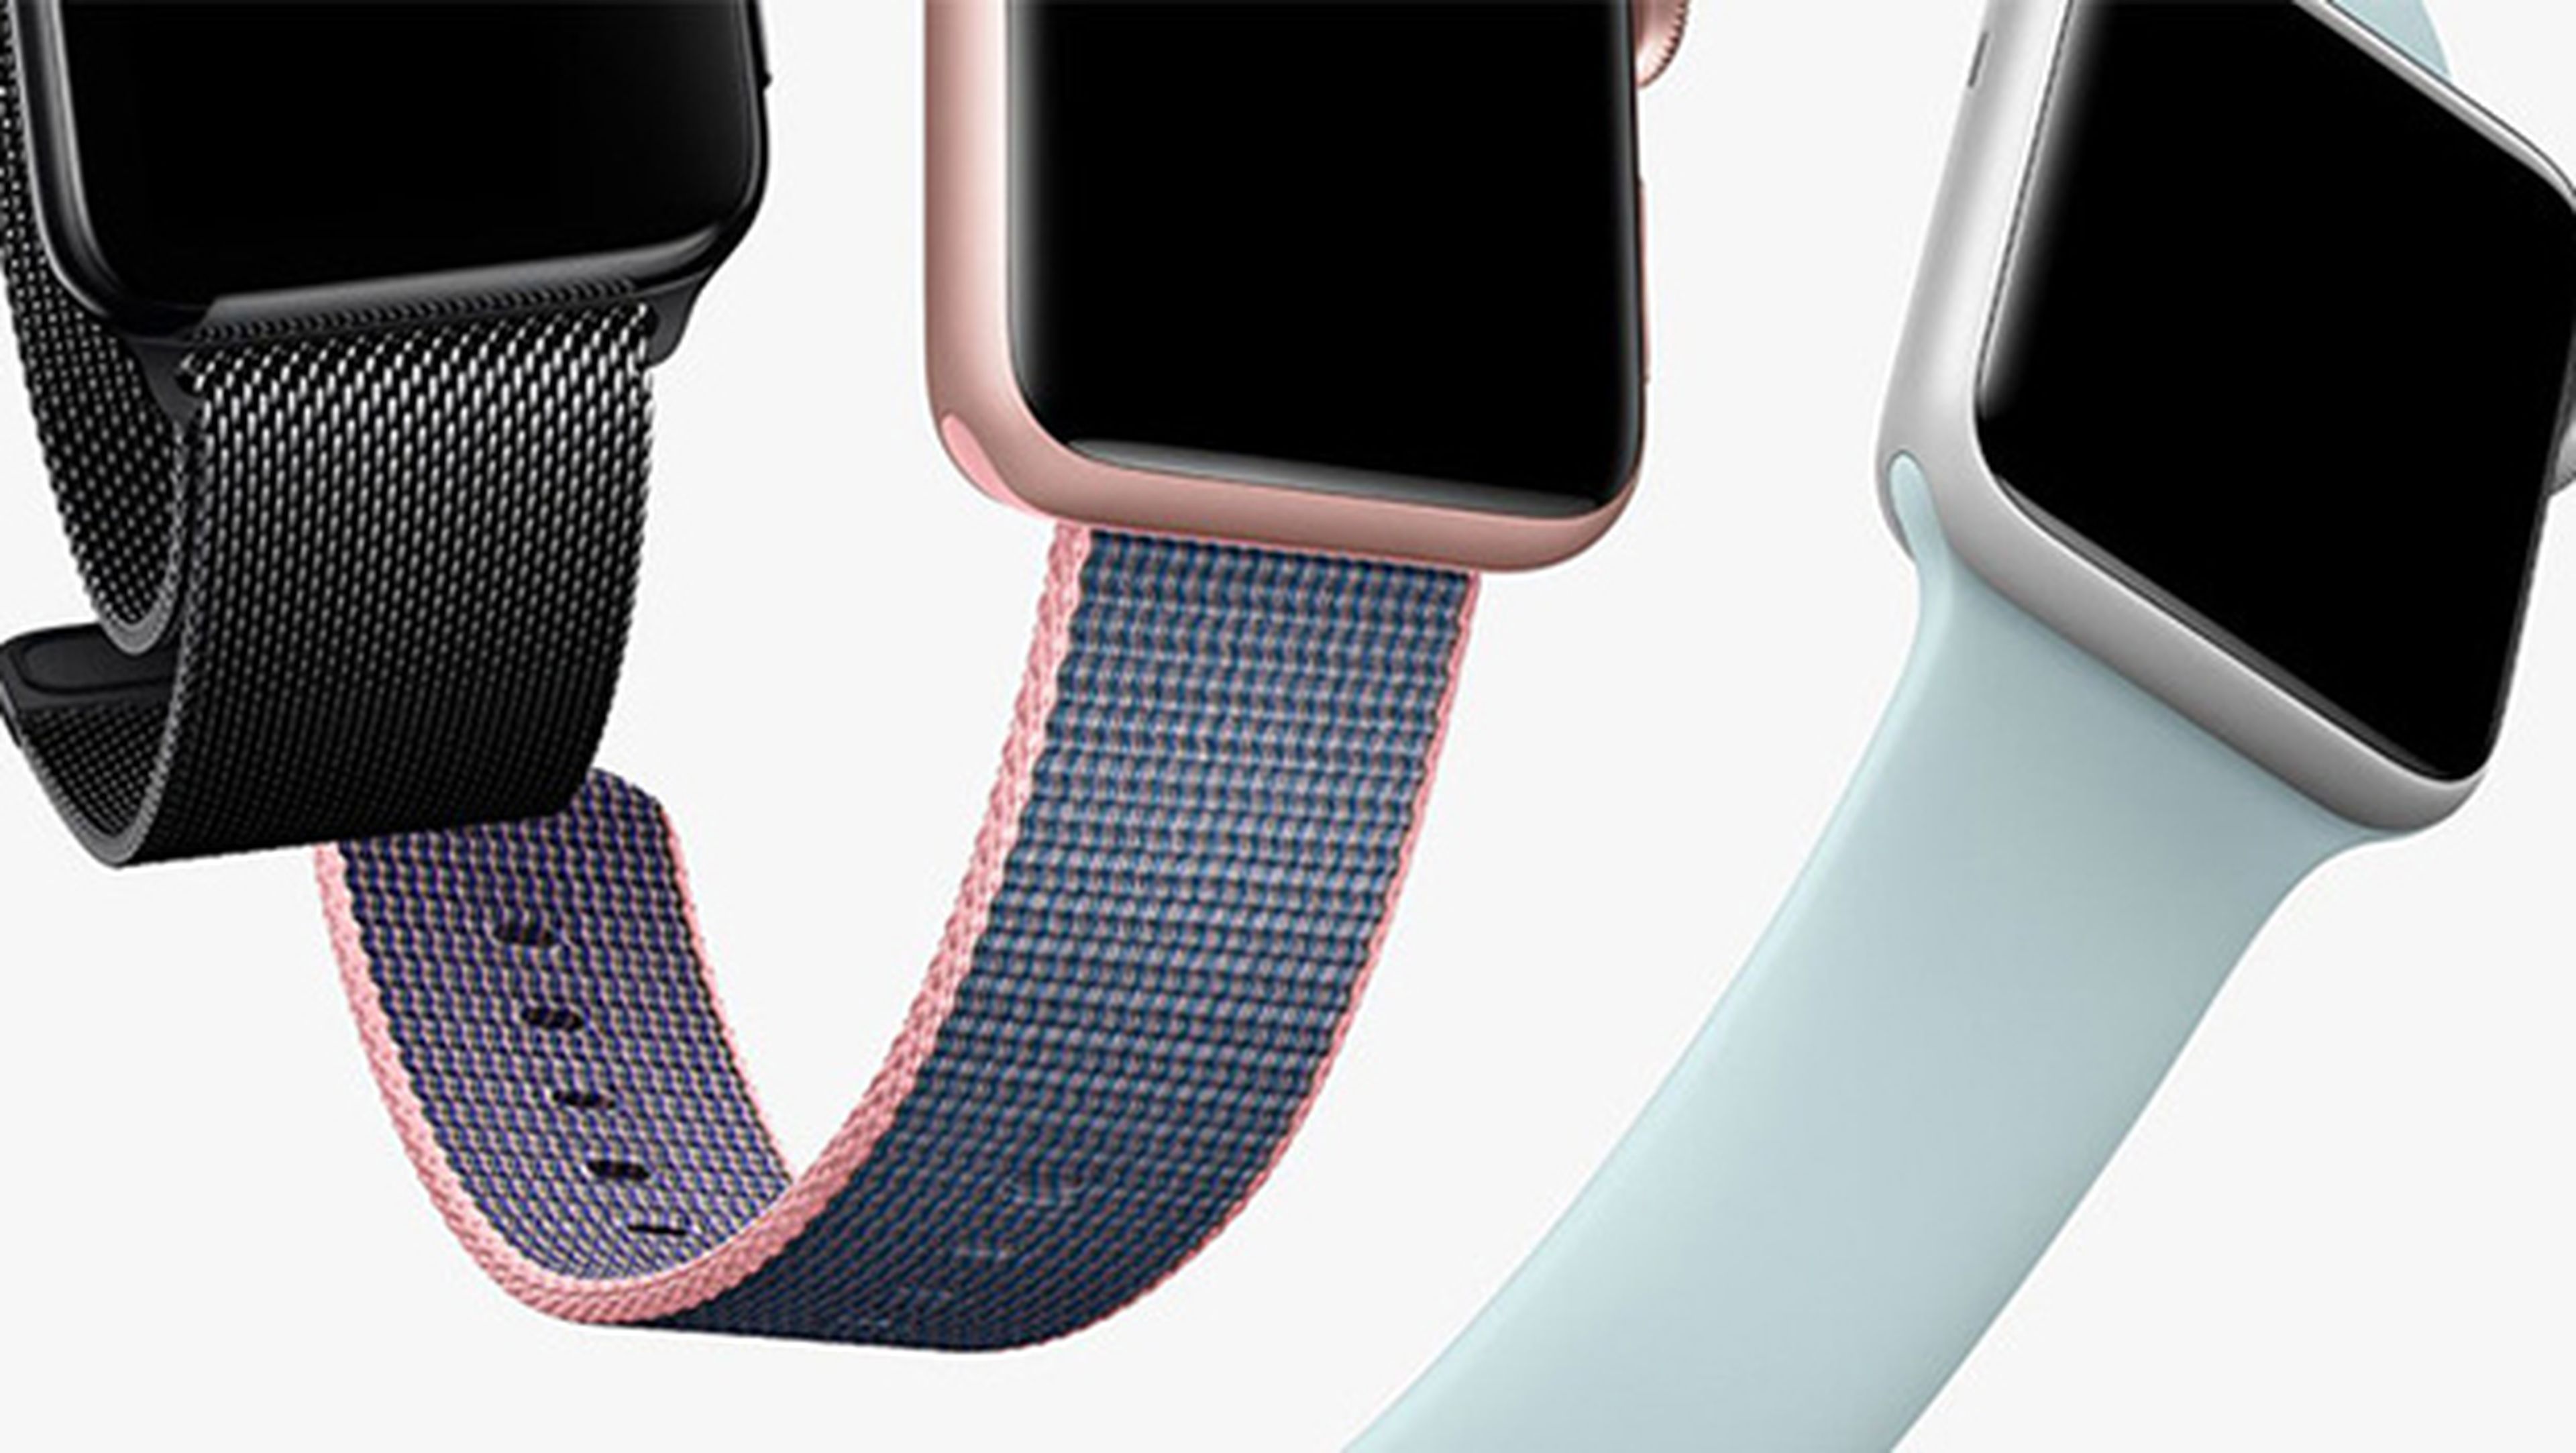 Los nuevos Apple Watch serían más delgados, según una patente